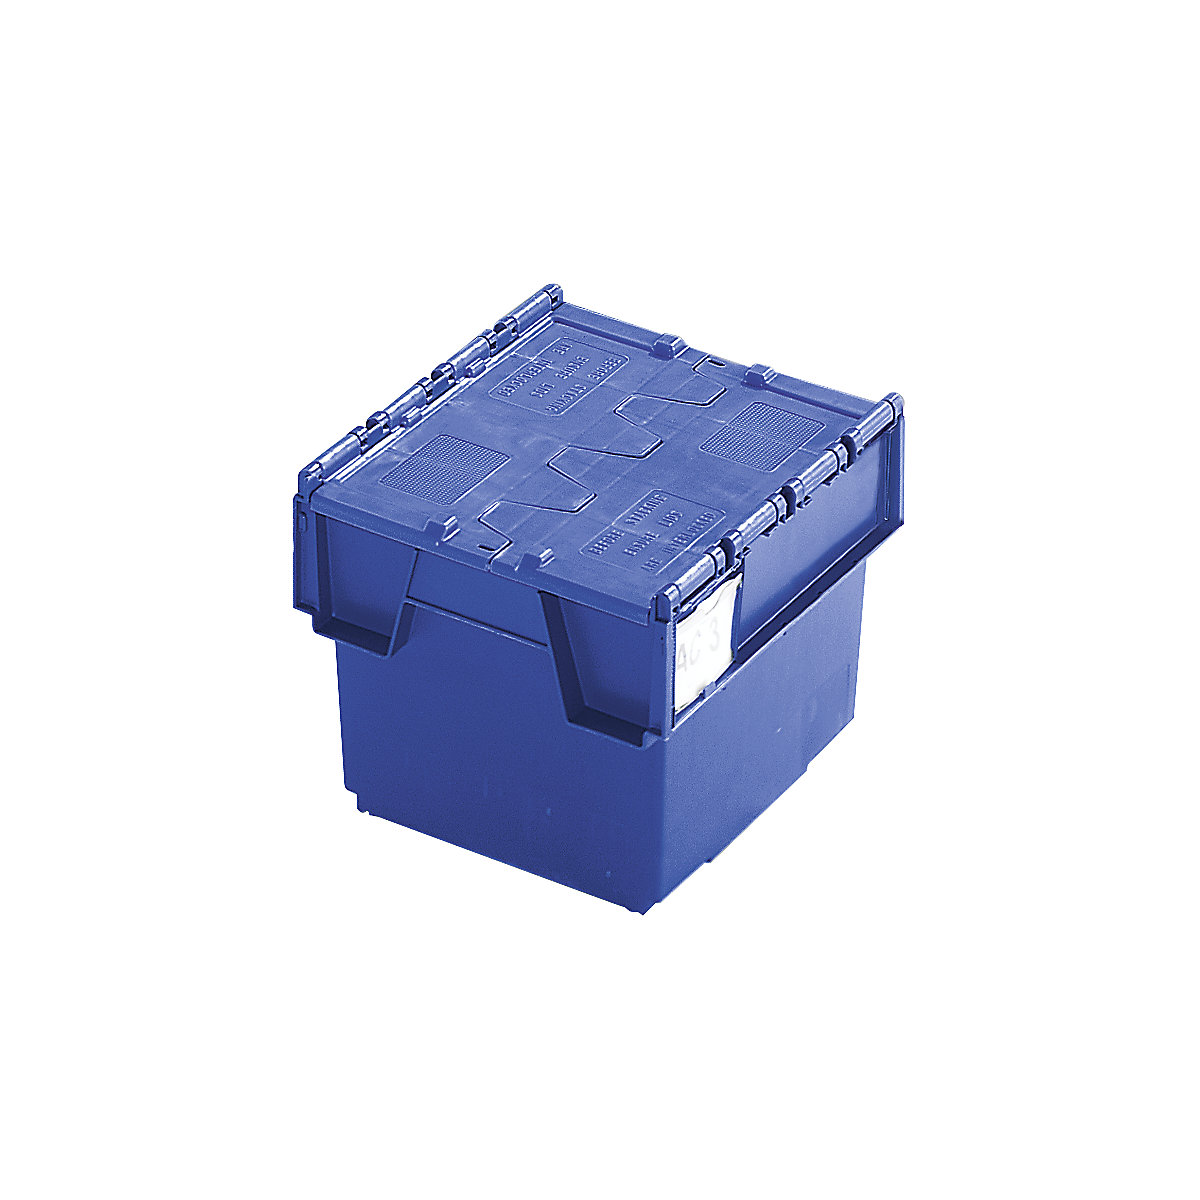 Mehrweg-Stapelbehälter mit Klappdeckel, Inhalt 20 Liter, LxBxH 400 x 300 x 252 mm, blau, ab 10 Stück